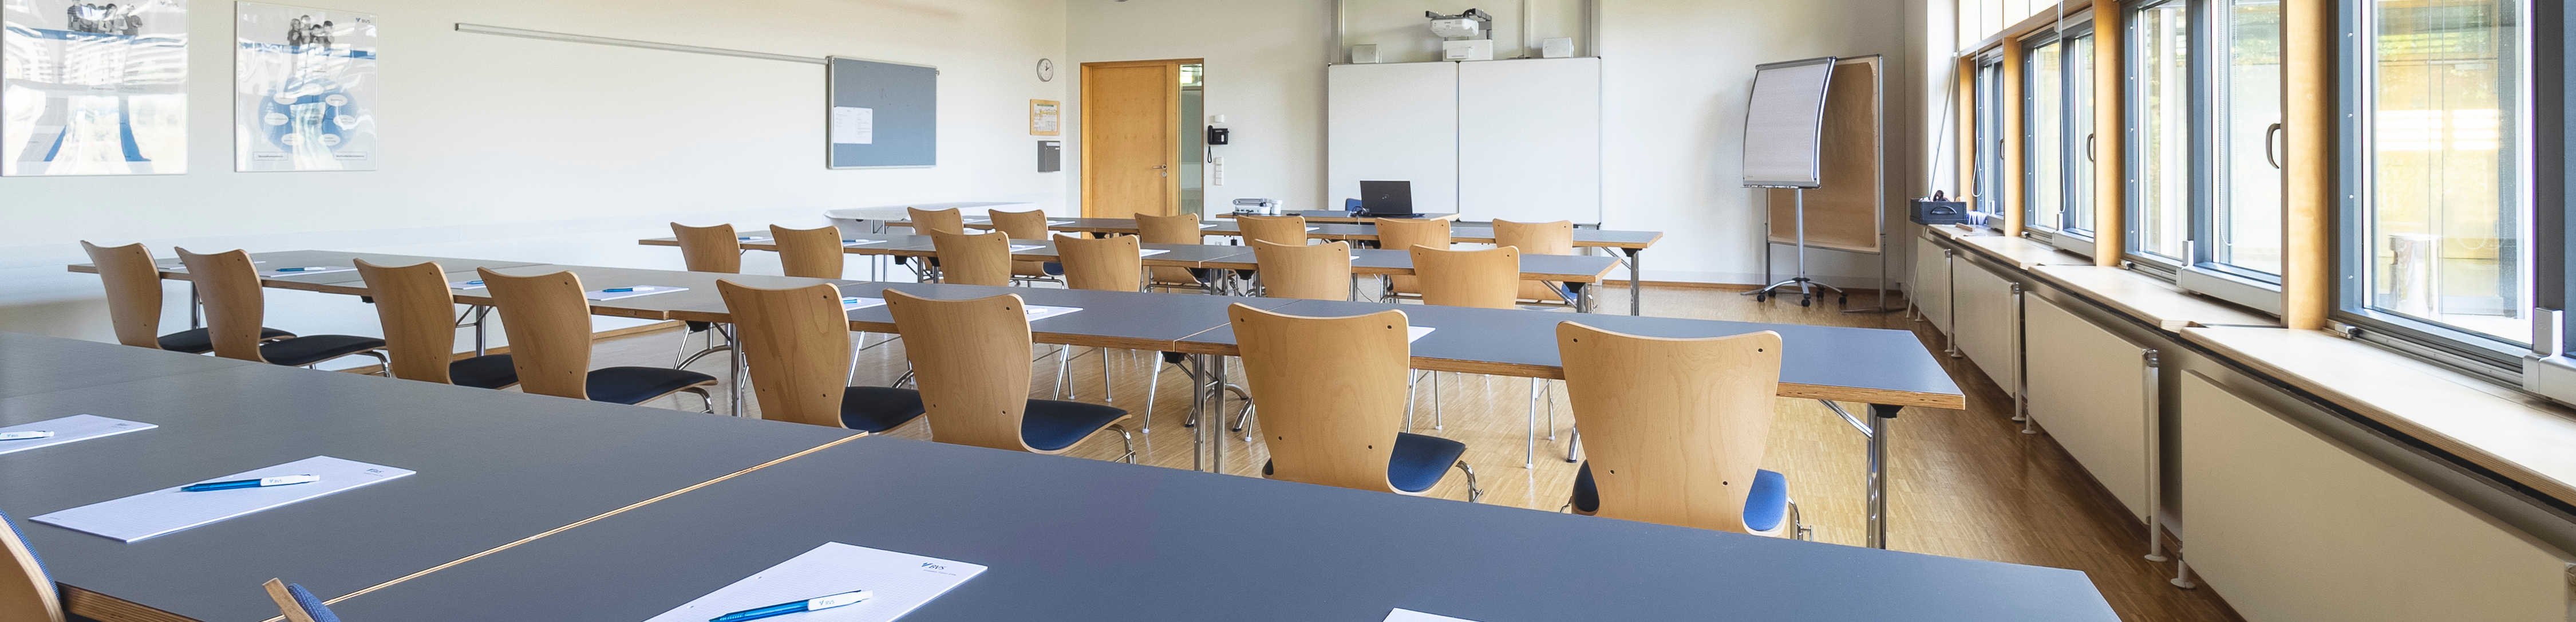 Das Bild ist das Headerbild der Seminarräume des BVS-Bildungszentrums in Lauingen. Es zeigt einen großen Seminarraum im BVS-Bildungszentrum in Lauingen.